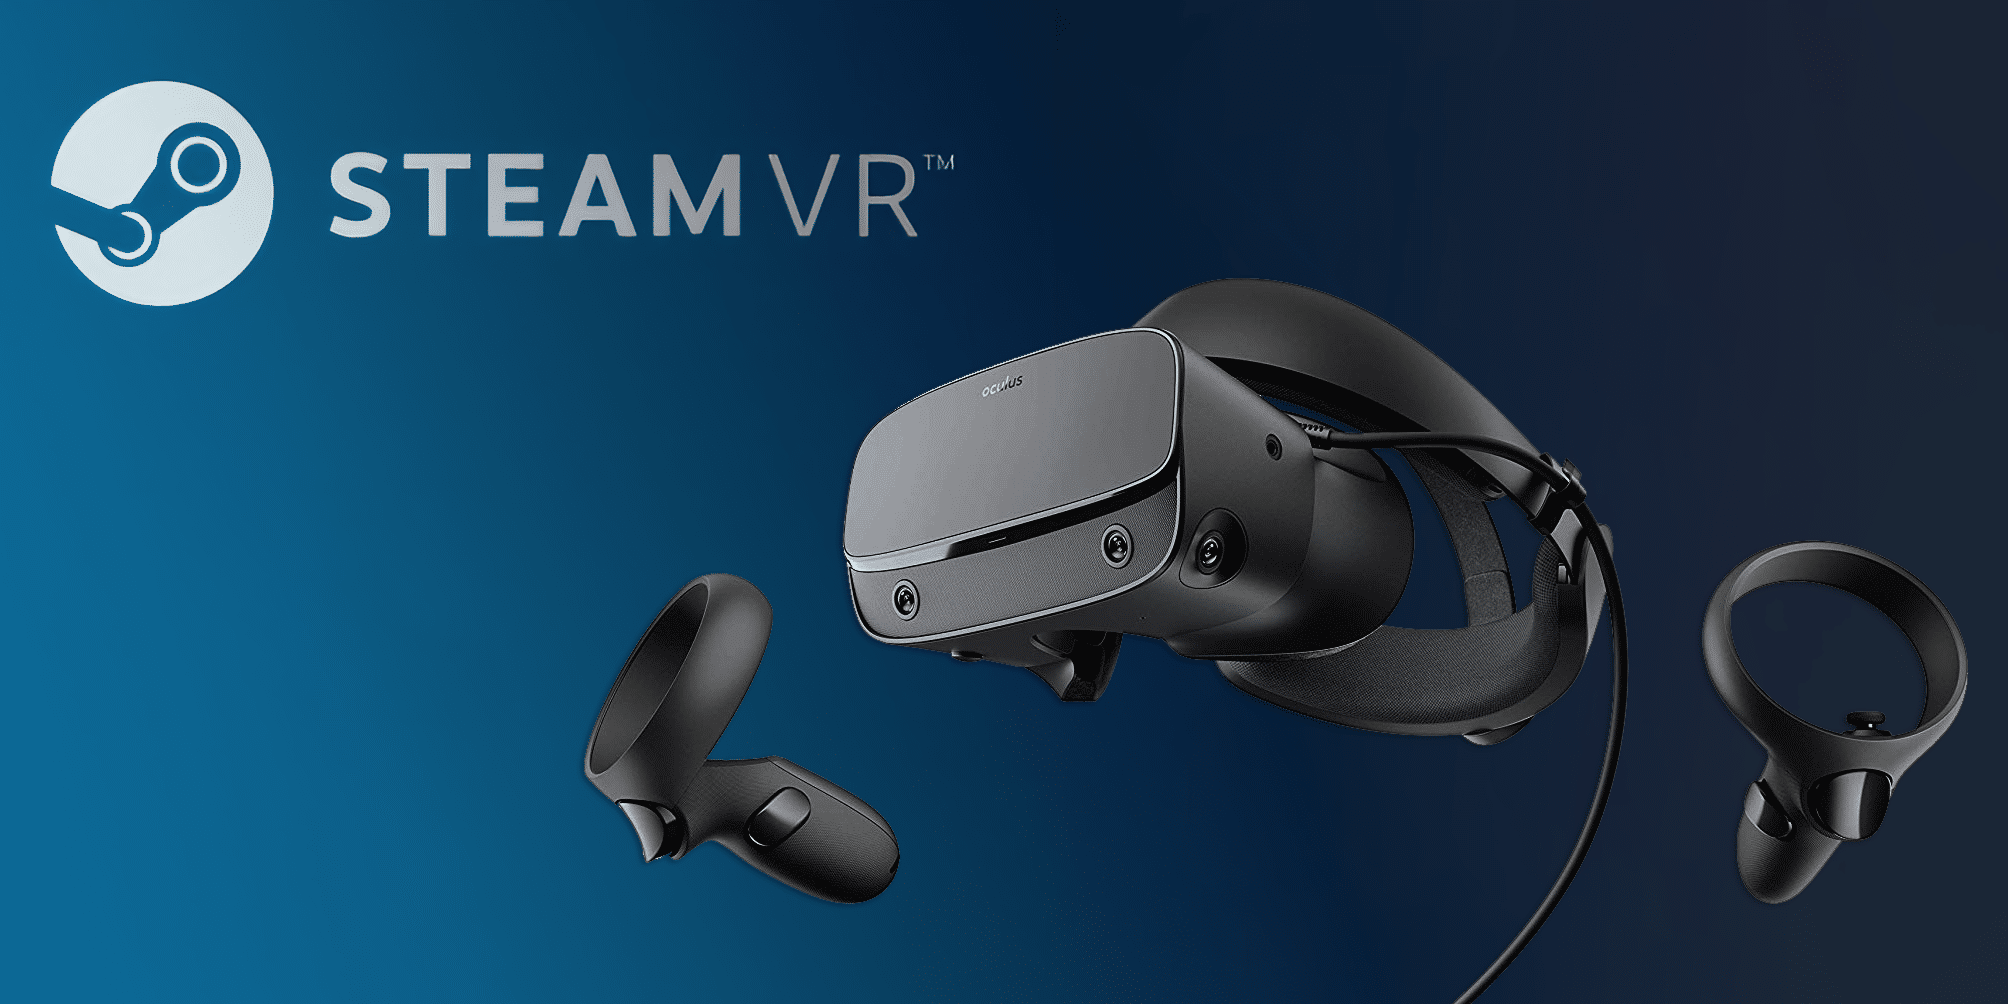 Khảo sát của Valve Software cho thấy đã có 1 triệu người sử dụng kính thực tế ảo nền SteamVR